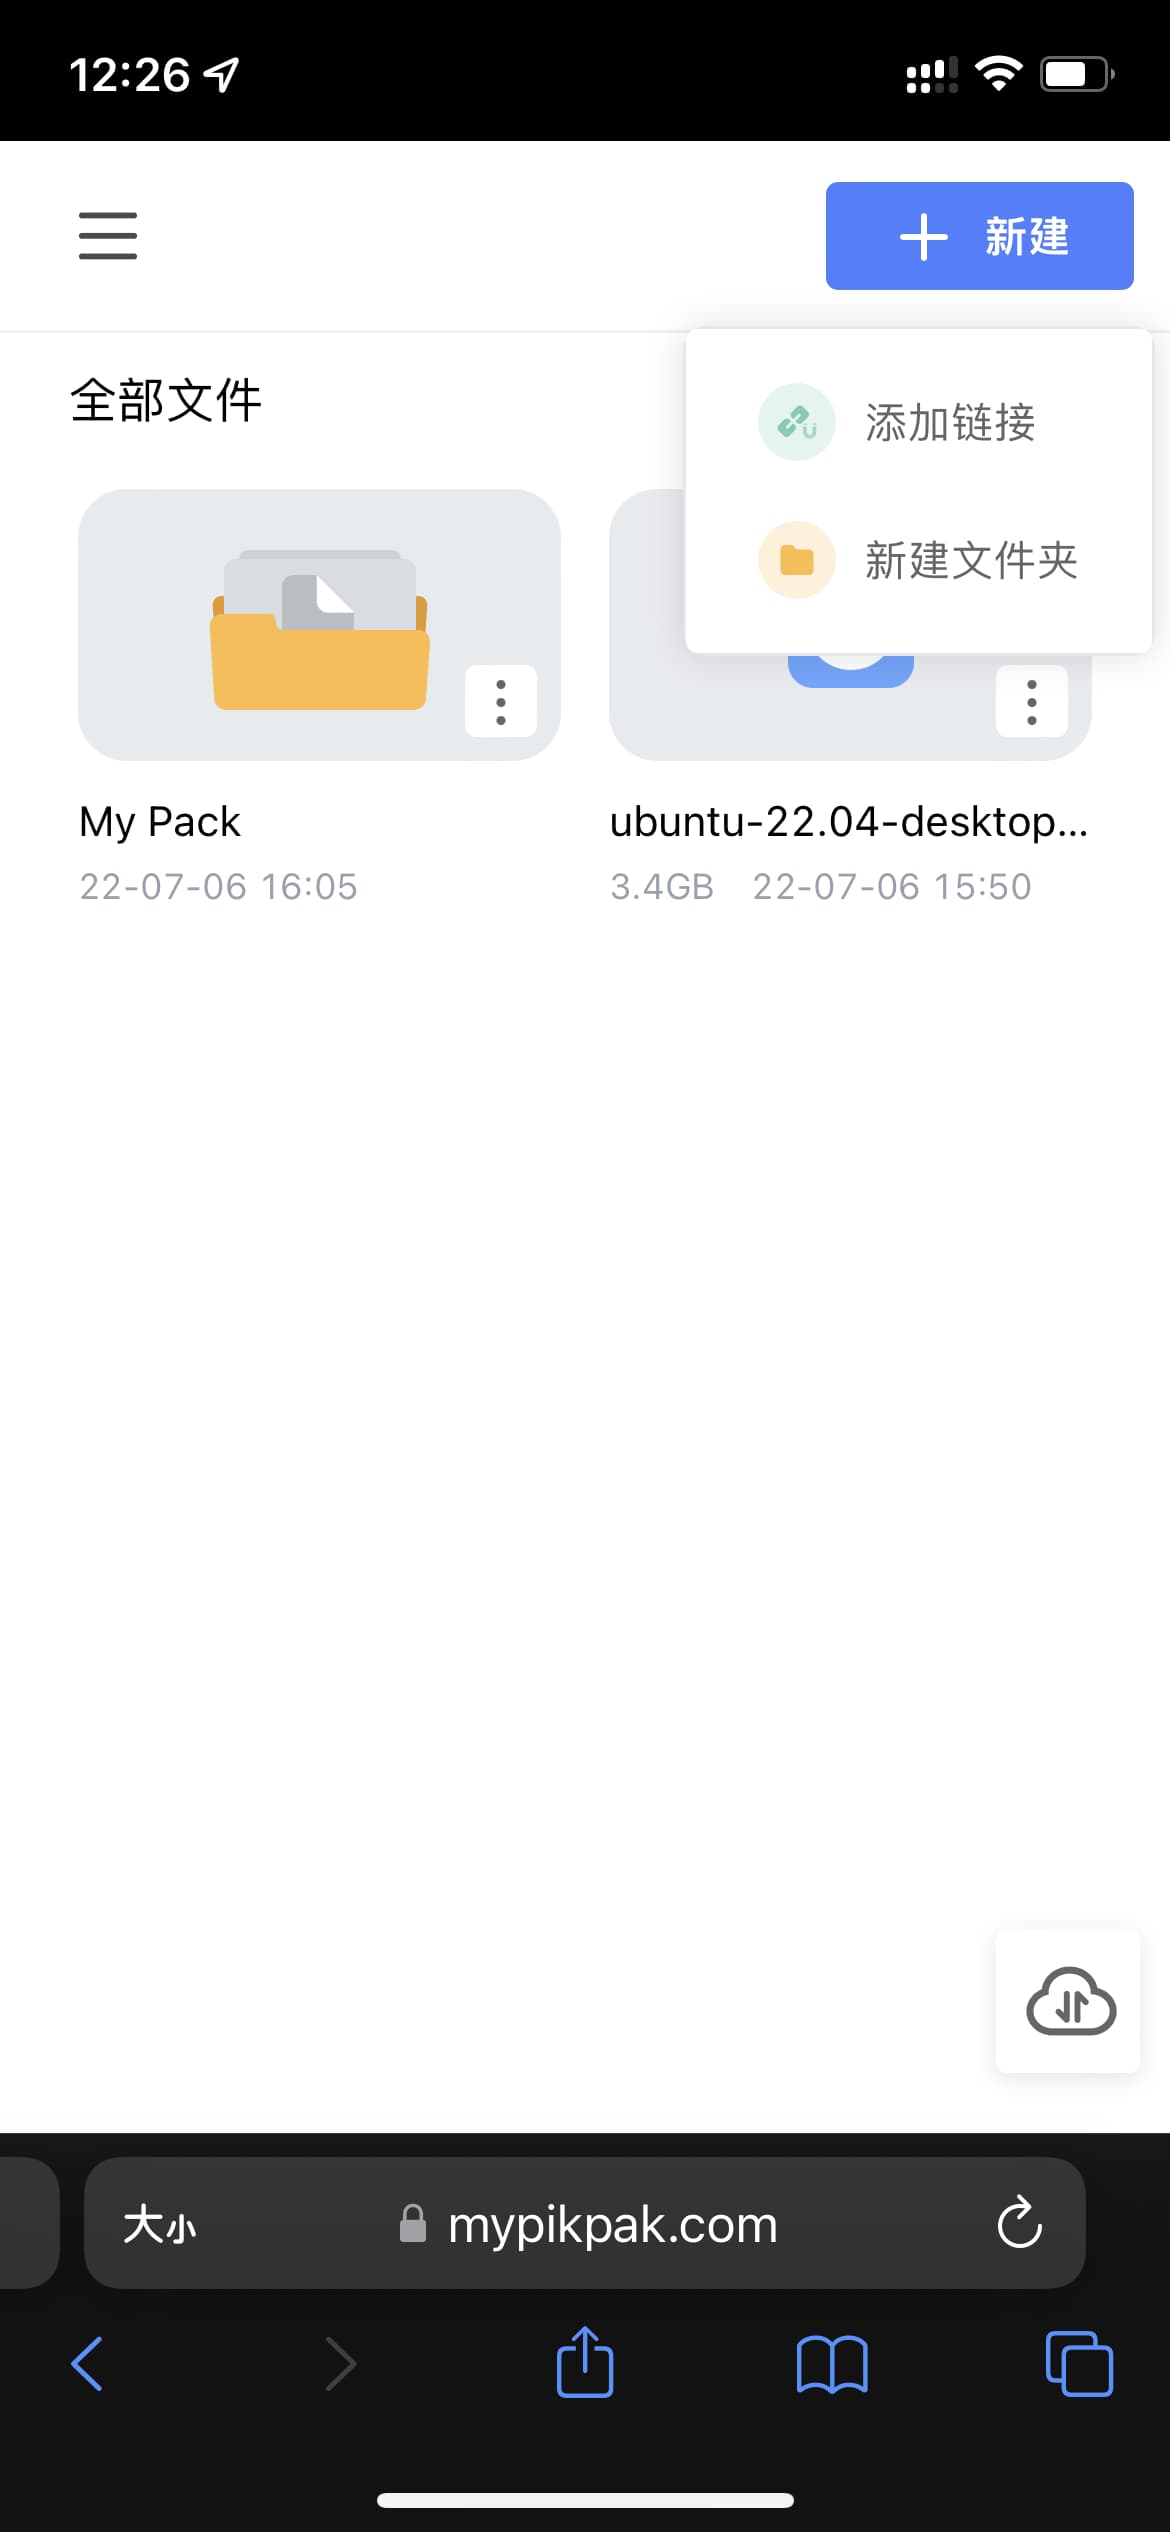 神级网盘 PikPak 发布 iOS 客户端、Chrome 扩展，支持离线下载、秒存、网盘、在线播放等功能 9